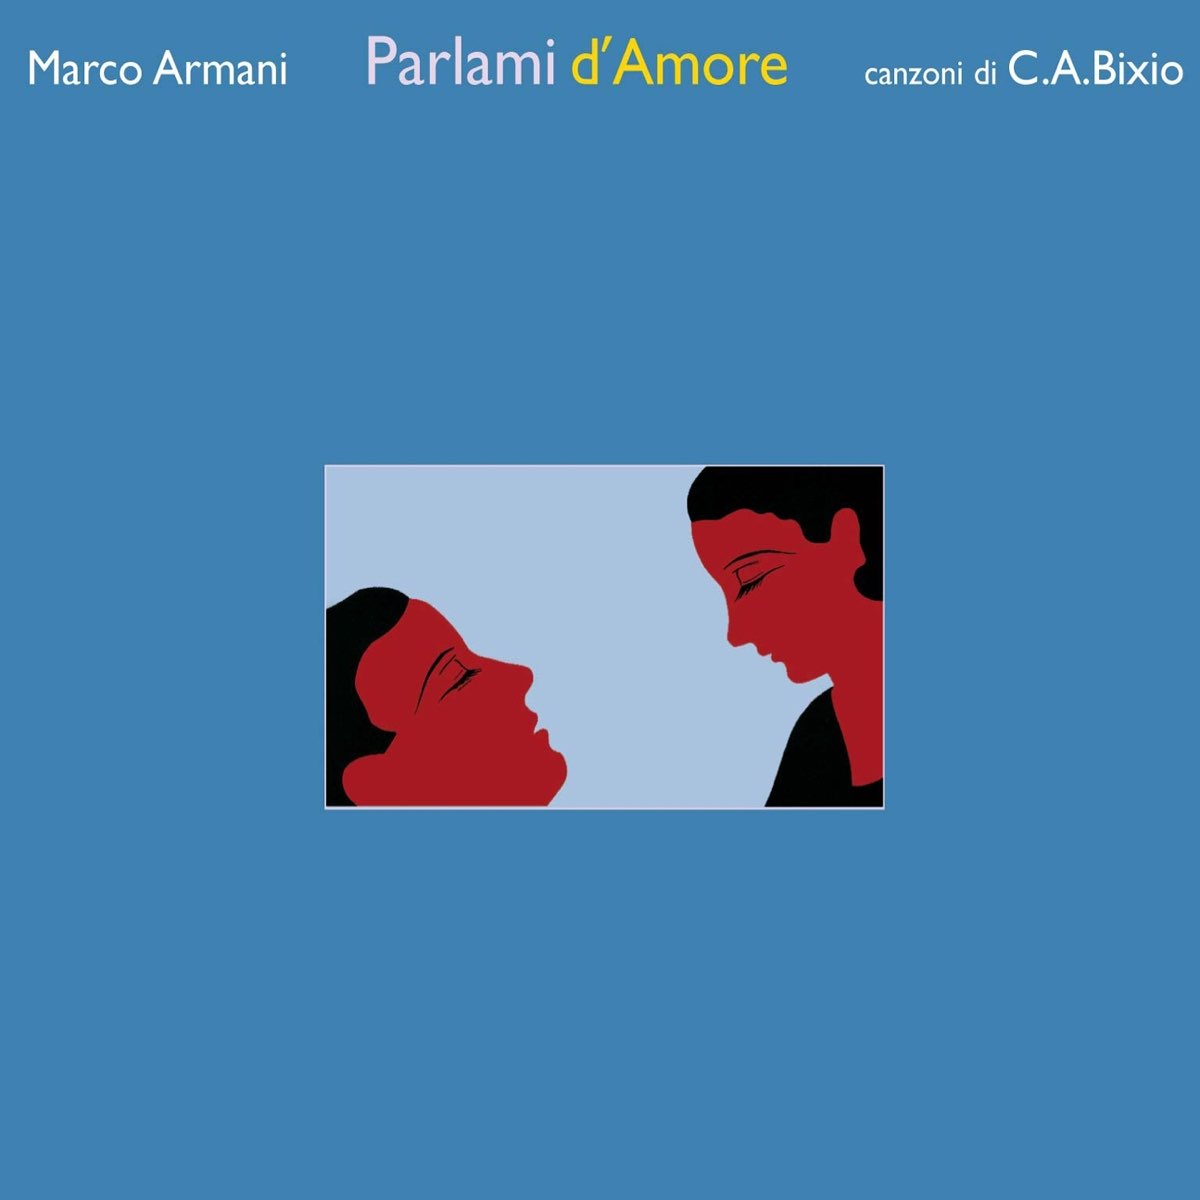 Le amore. Parlami d'Amore, Mariu'! Партитура оригинала. Песня è la Vita Marco Armani. Arman Marcos.